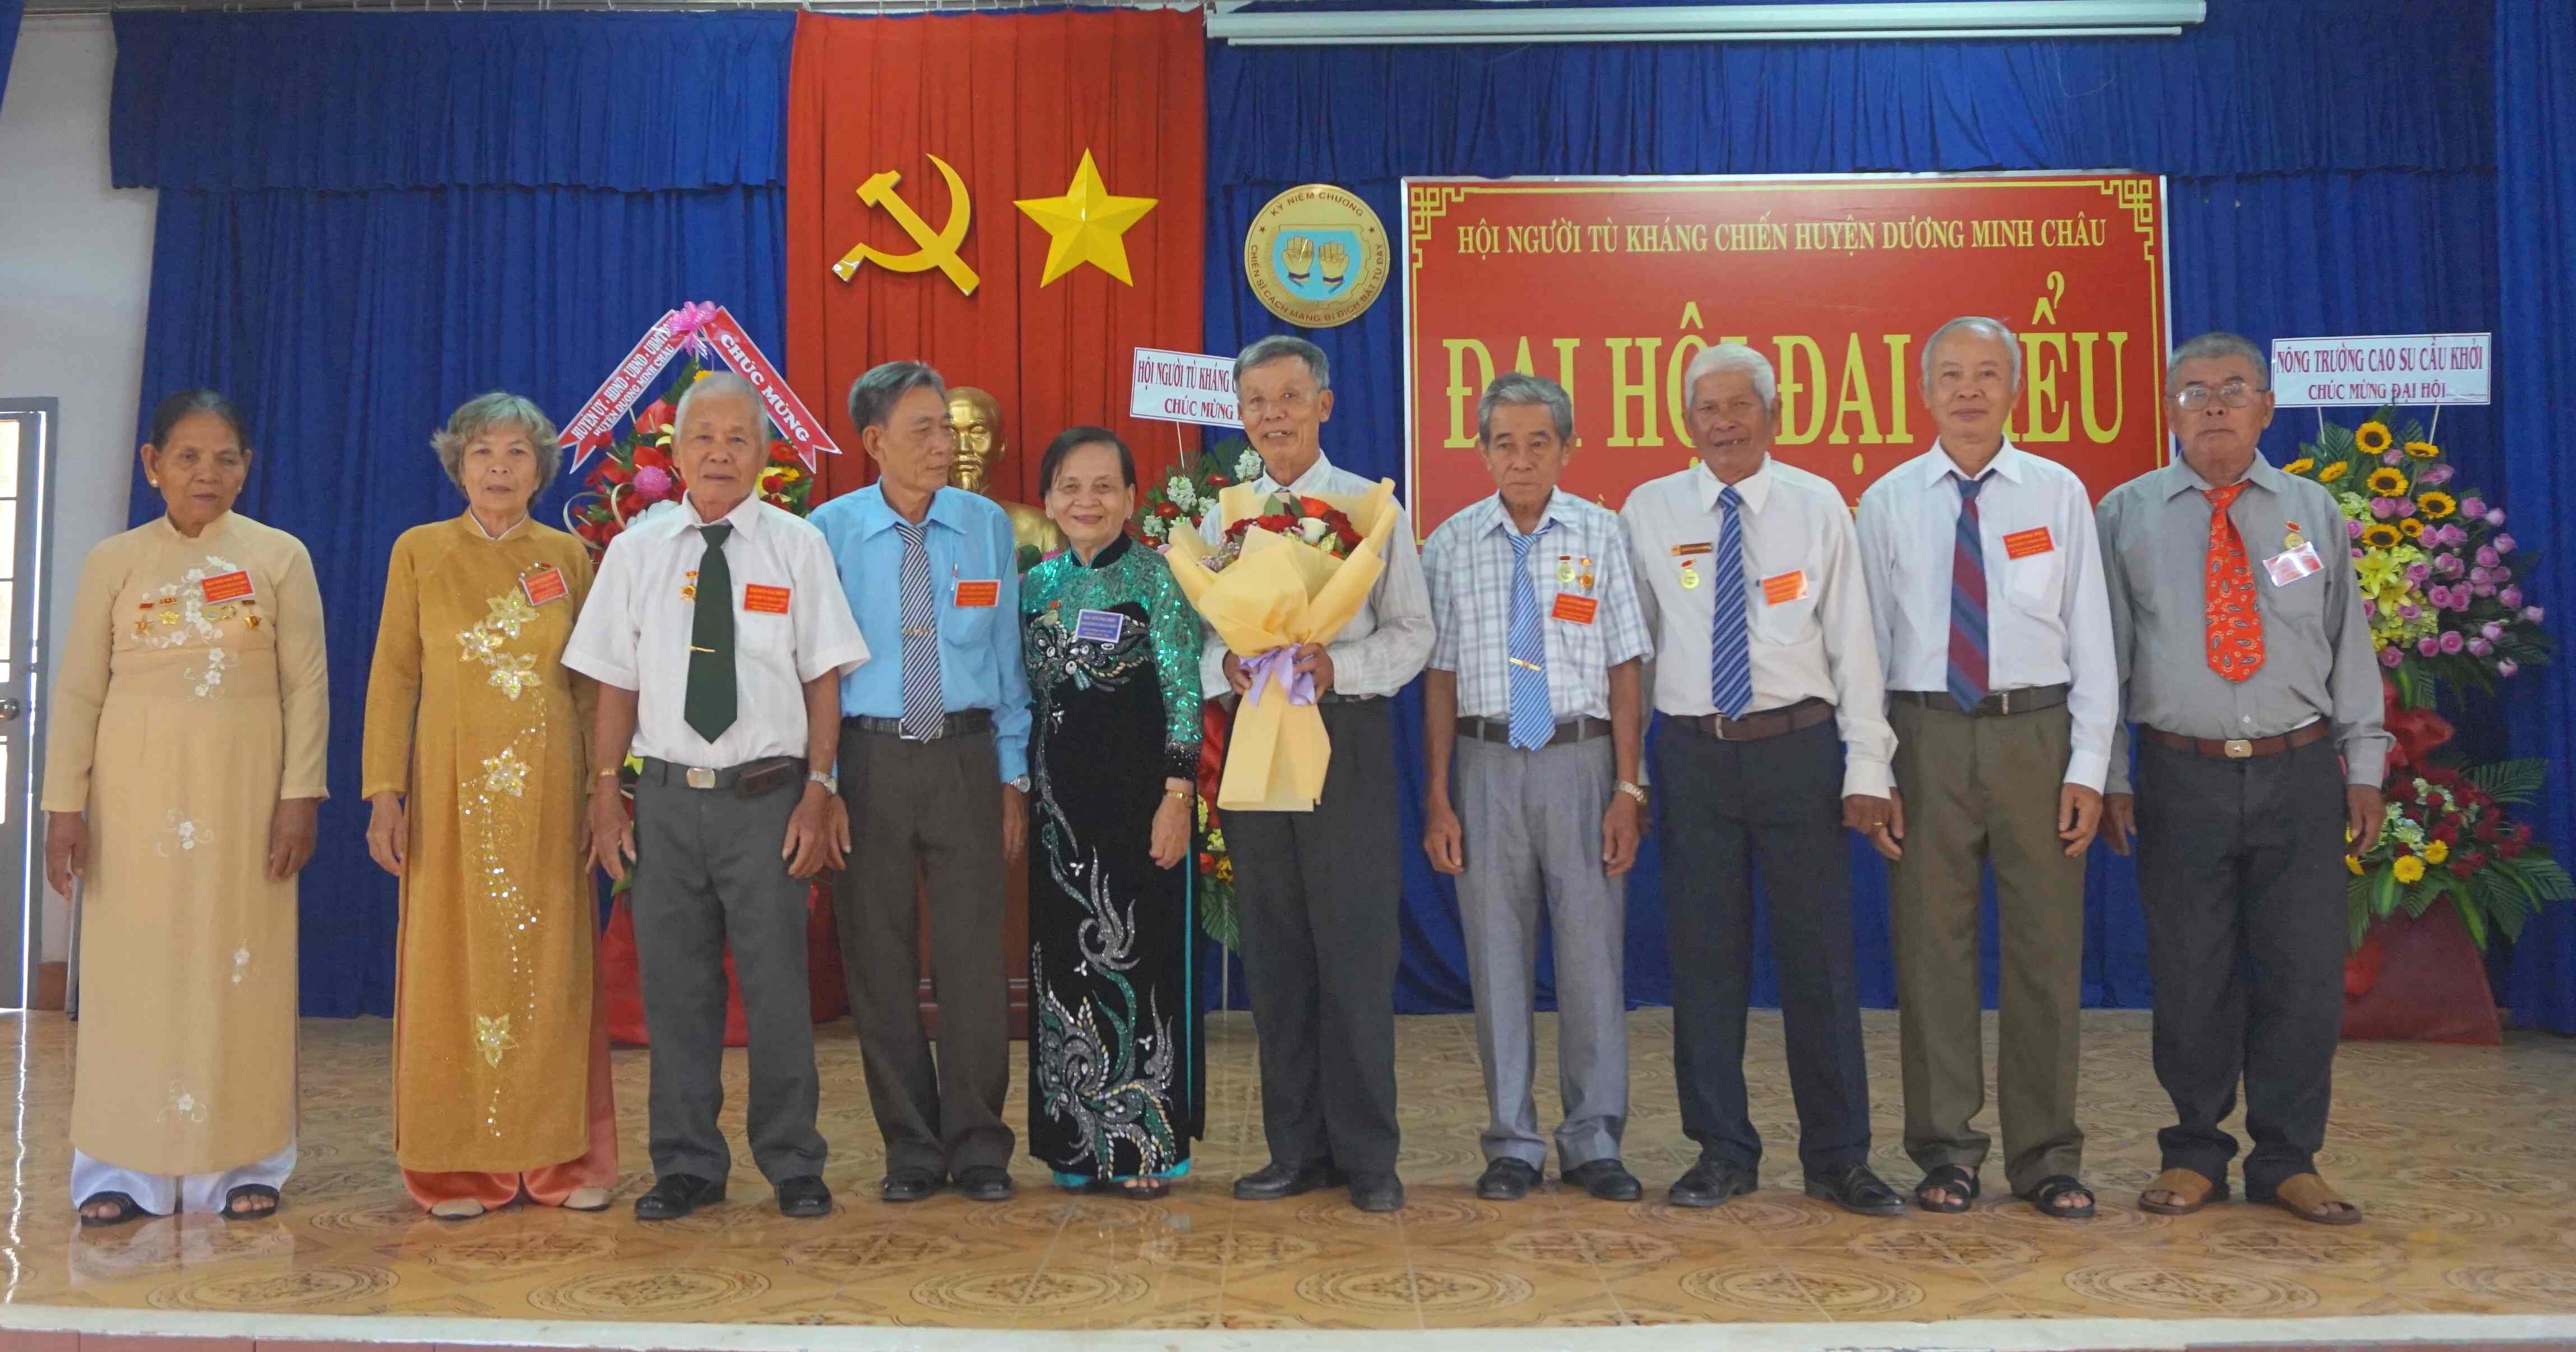 Huyện Dương Minh Châu: Tổ chức thành công Đại hội đại biểu Hội Người tù kháng chiến lần thứ IV, nhiệm kỳ 2020-2025